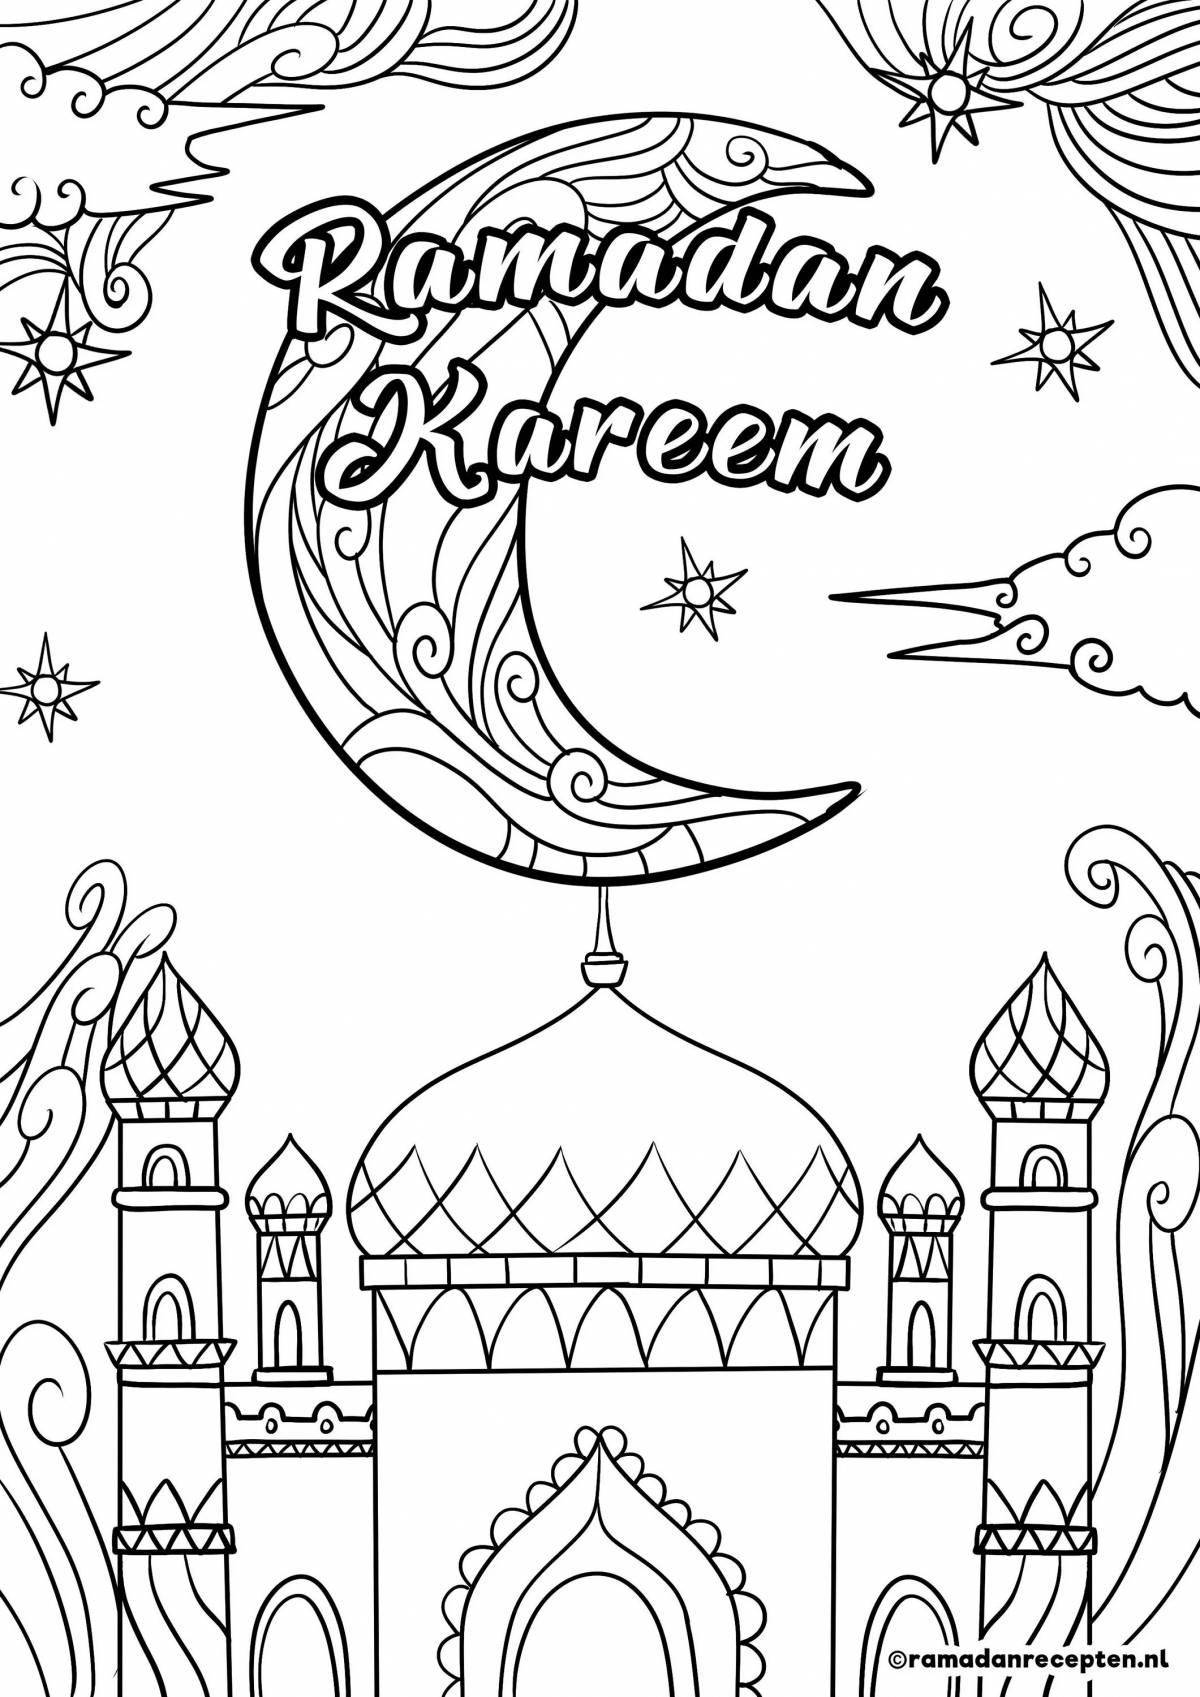 Красочная раскраска рамадан